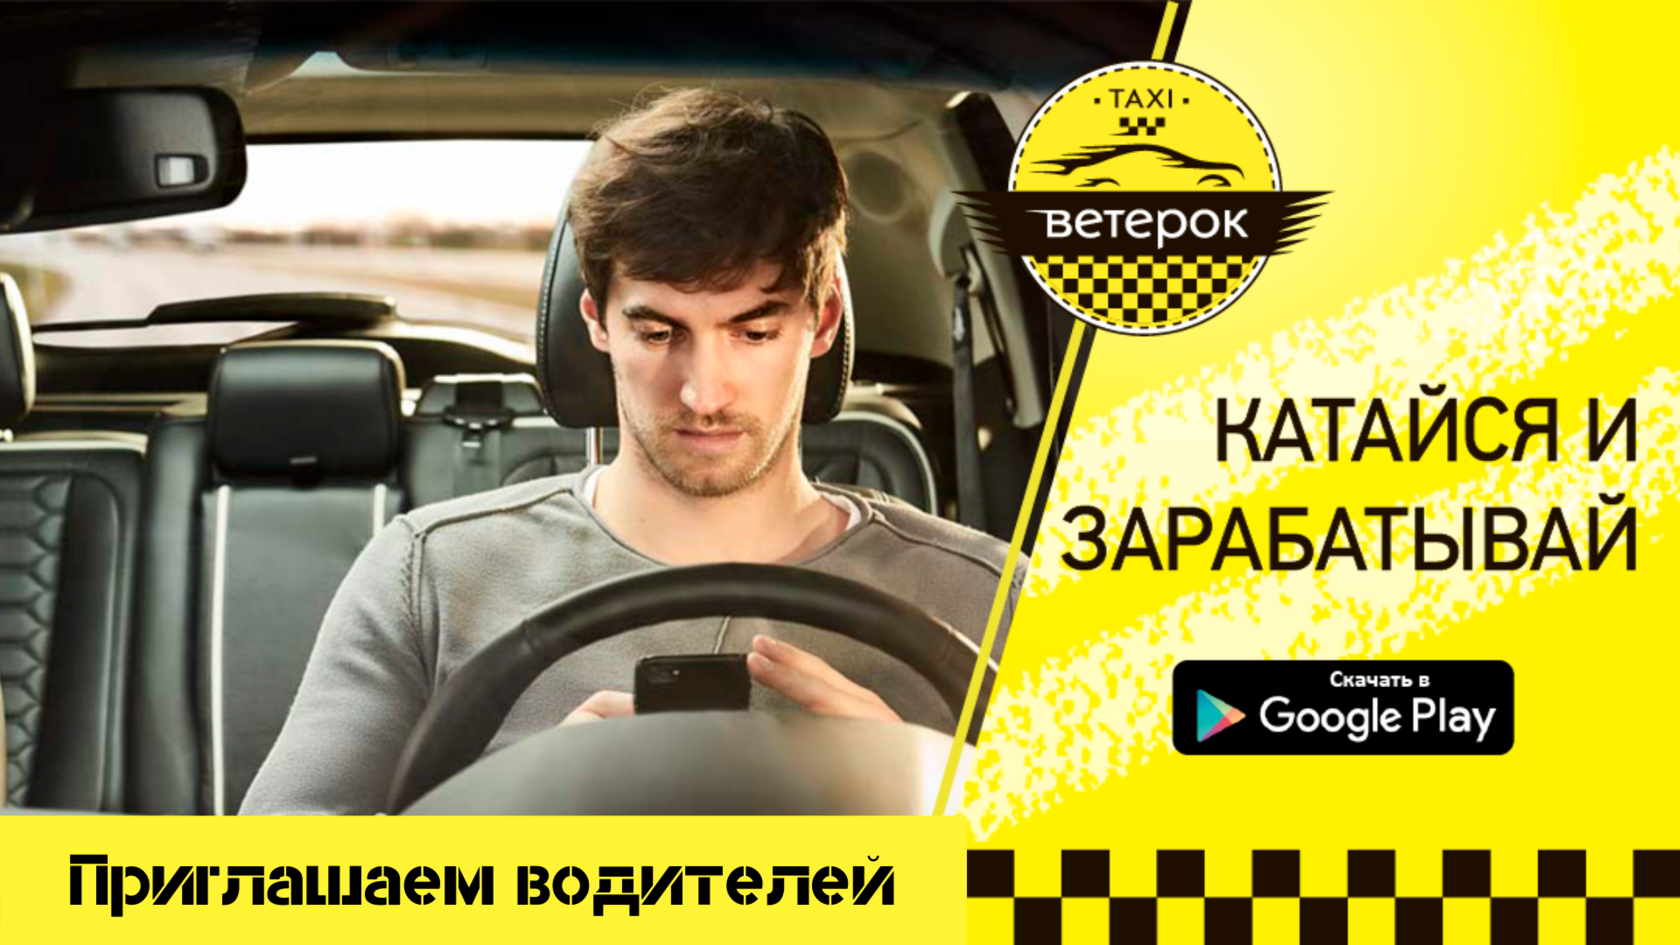 Водитель такси симферополь